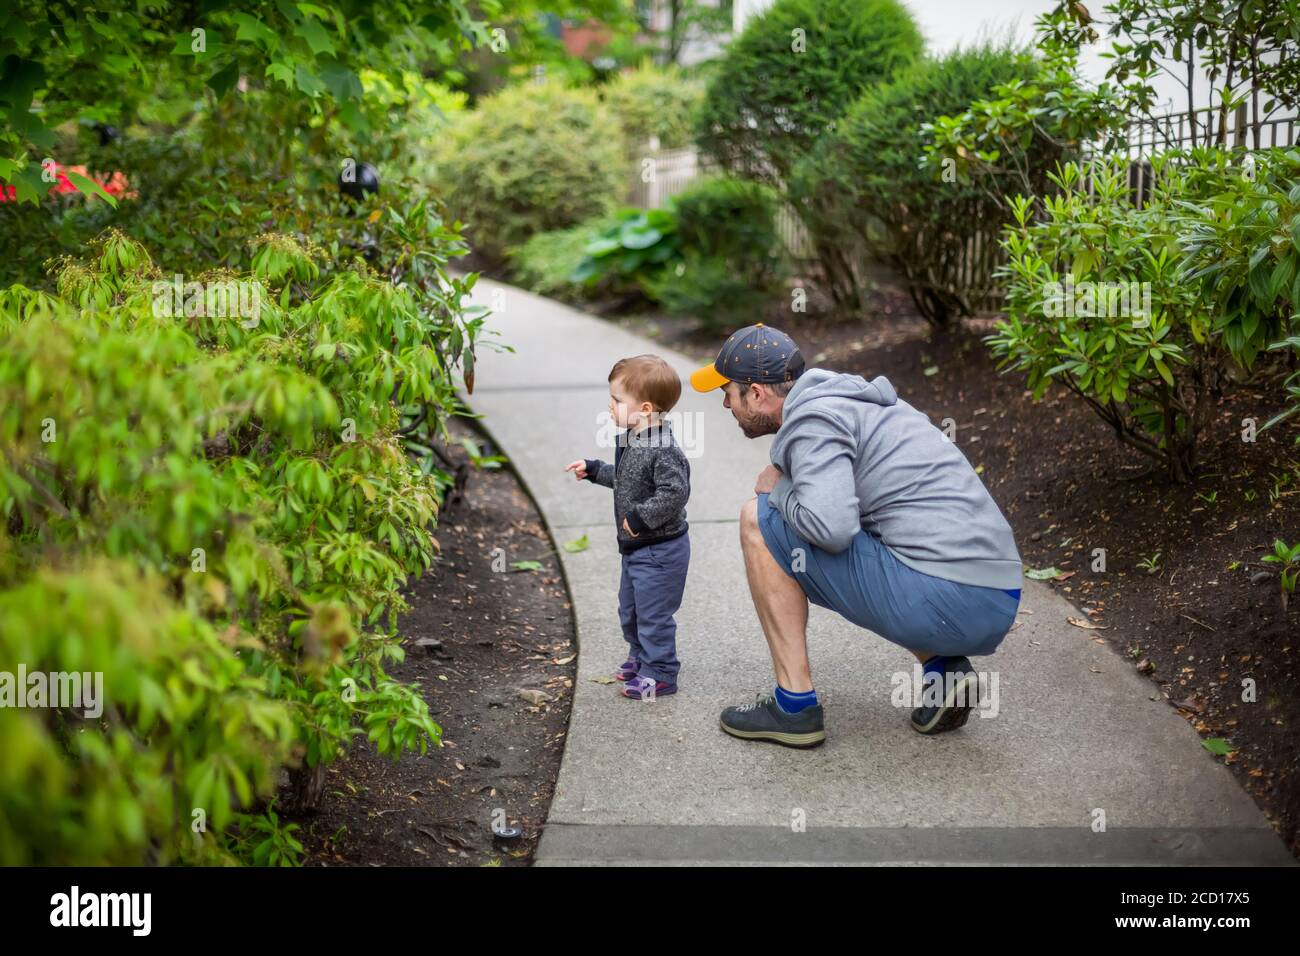 Un padre si accovacciò vicino alla sua giovane figlia su un percorso mentre scoprono la natura; Vancouver del Nord, Columbia Britannica, Canada Foto Stock